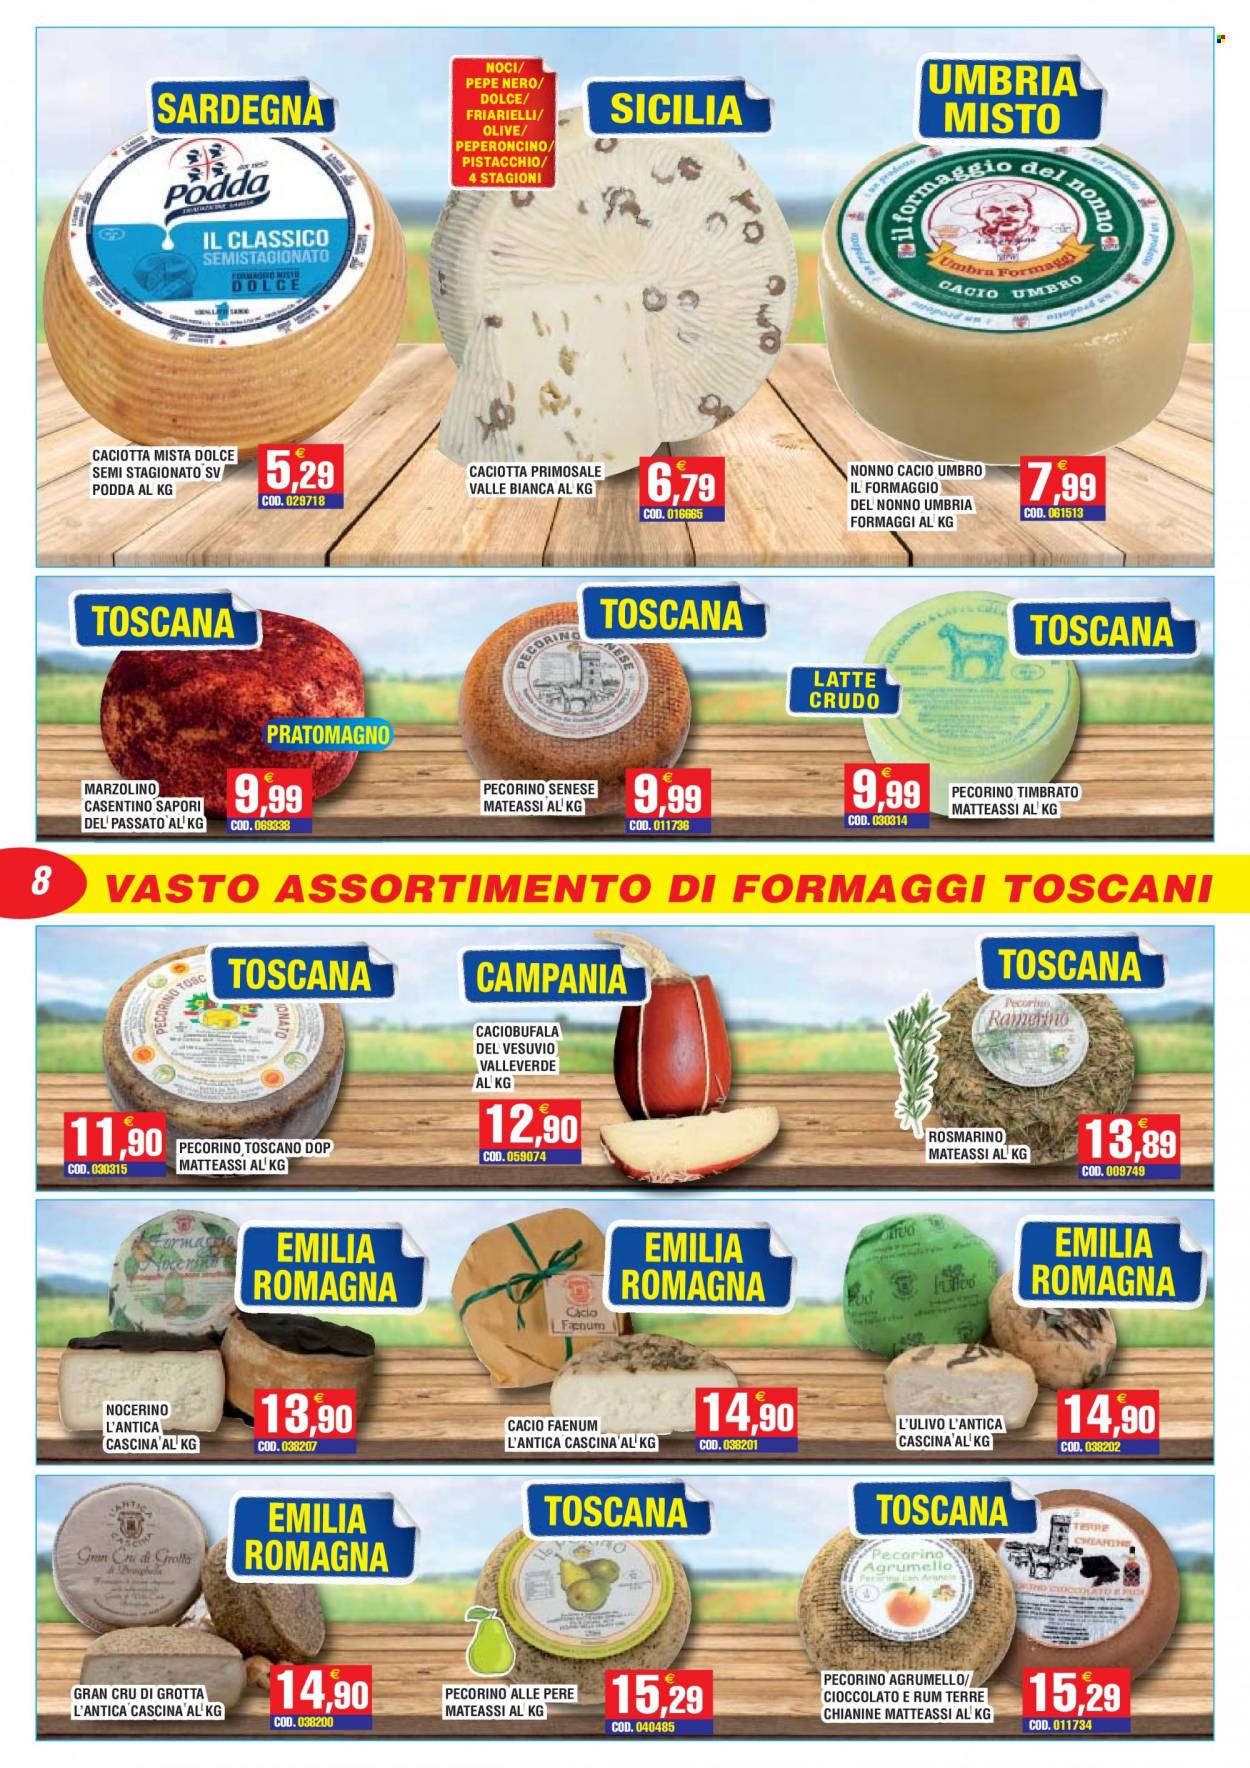 thumbnail - Volantino Immenso Cash - 16/5/2022 - 28/5/2022 - Prodotti in offerta - pere, formaggio, caciotta, pecorino, Pecorino Toscano, Primosale, olive, rosmarino, pepe nero, rum. Pagina 8.